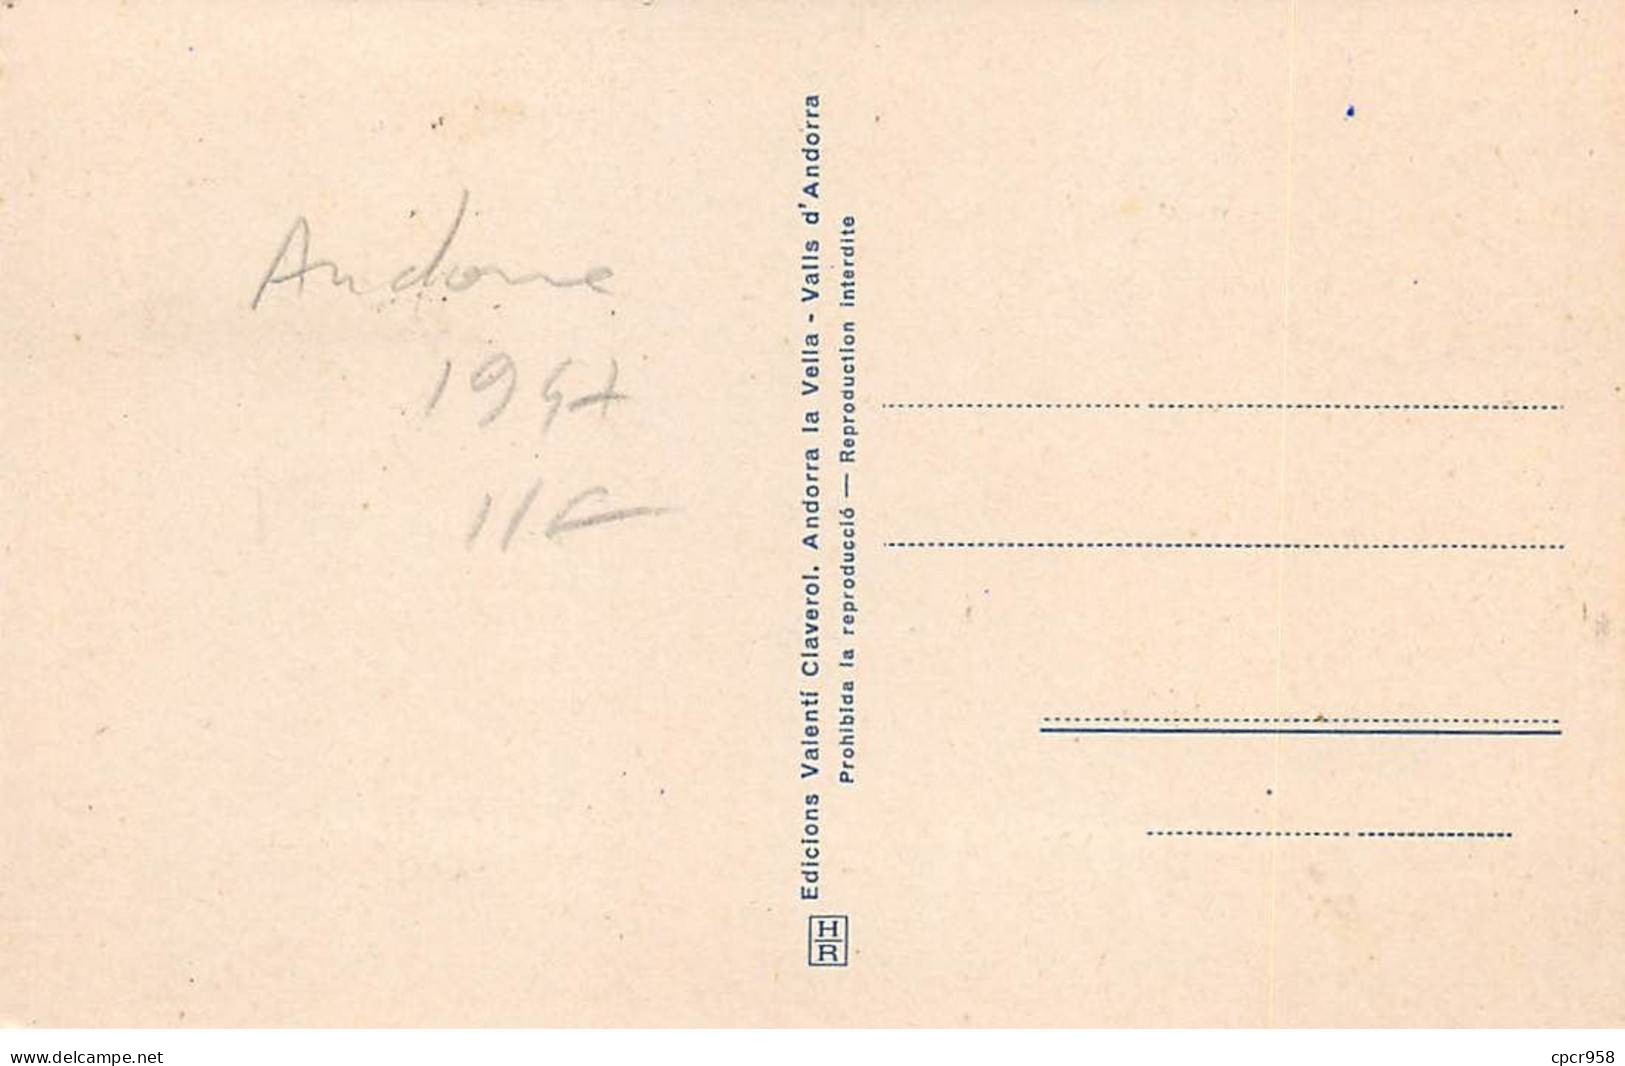 ANDORRE.Carte Maximum.AM14024.1947.Cachet Andorre.Vallée D'Andorre.Gorges De St.Julia - Oblitérés